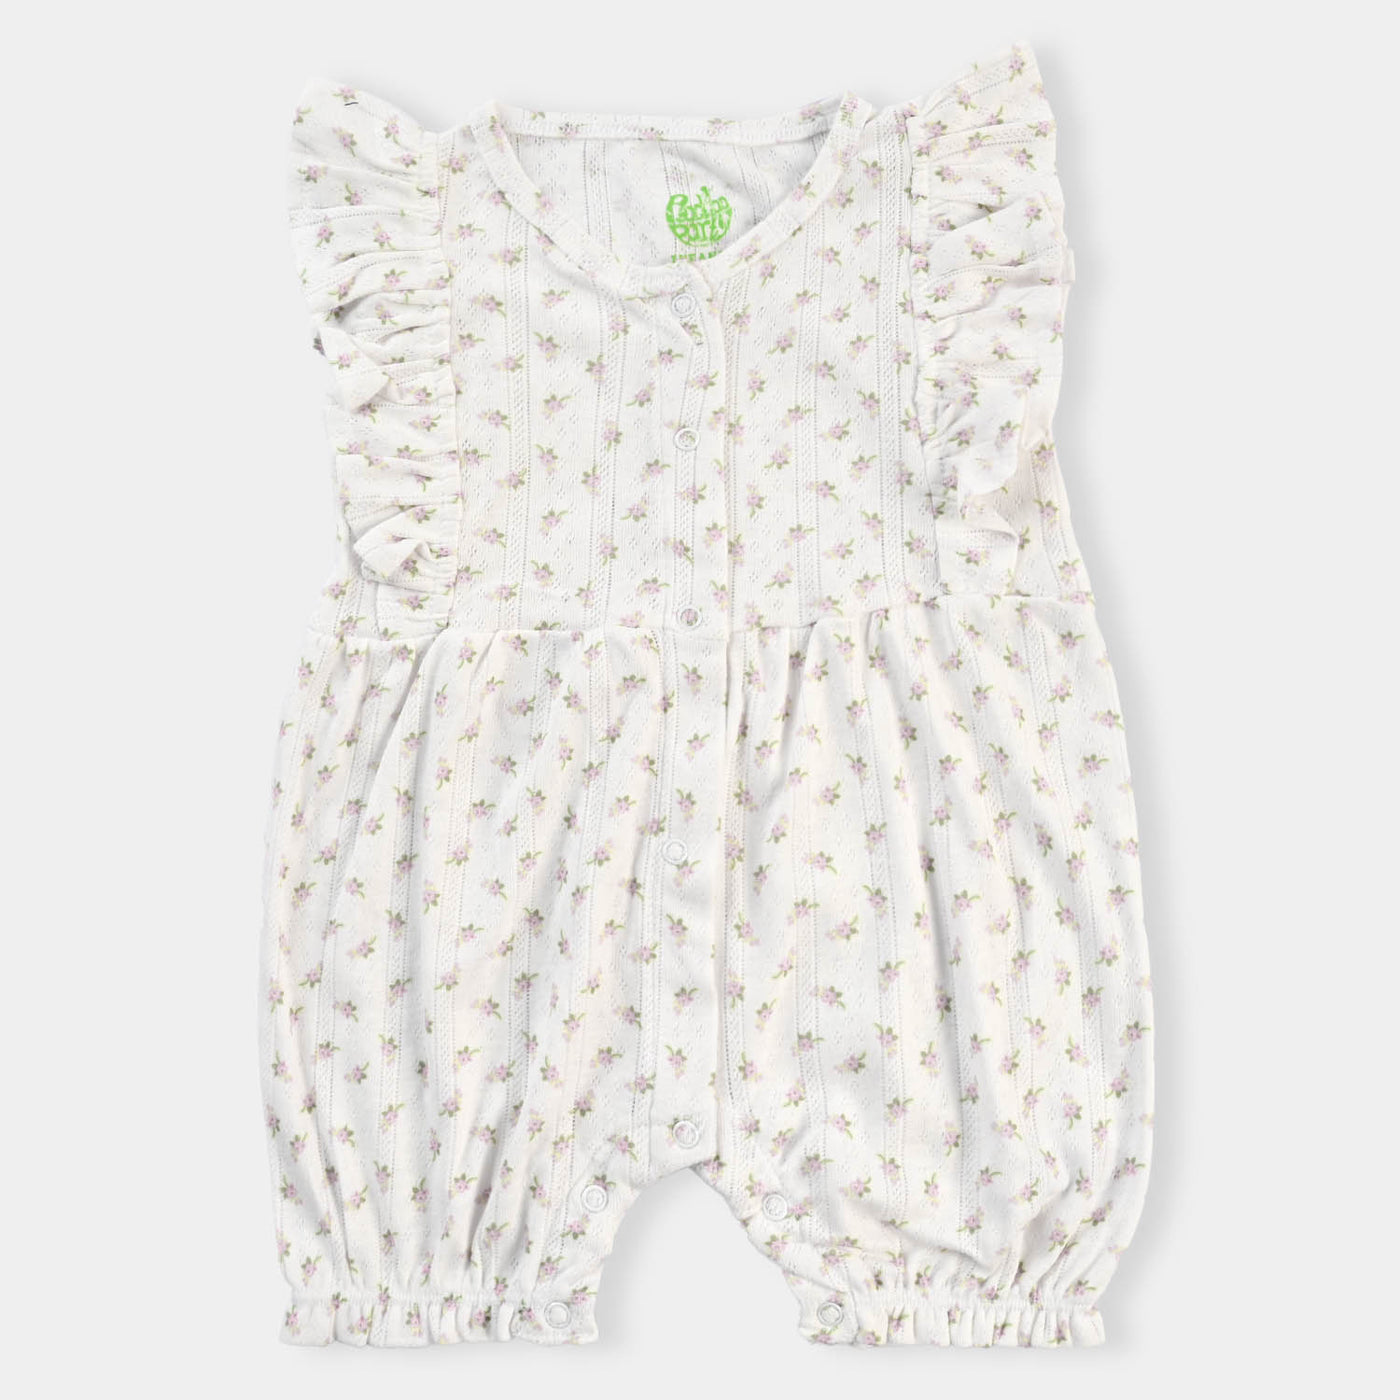 Infant Girls Jacquard Knitted Romper Flower-Off White